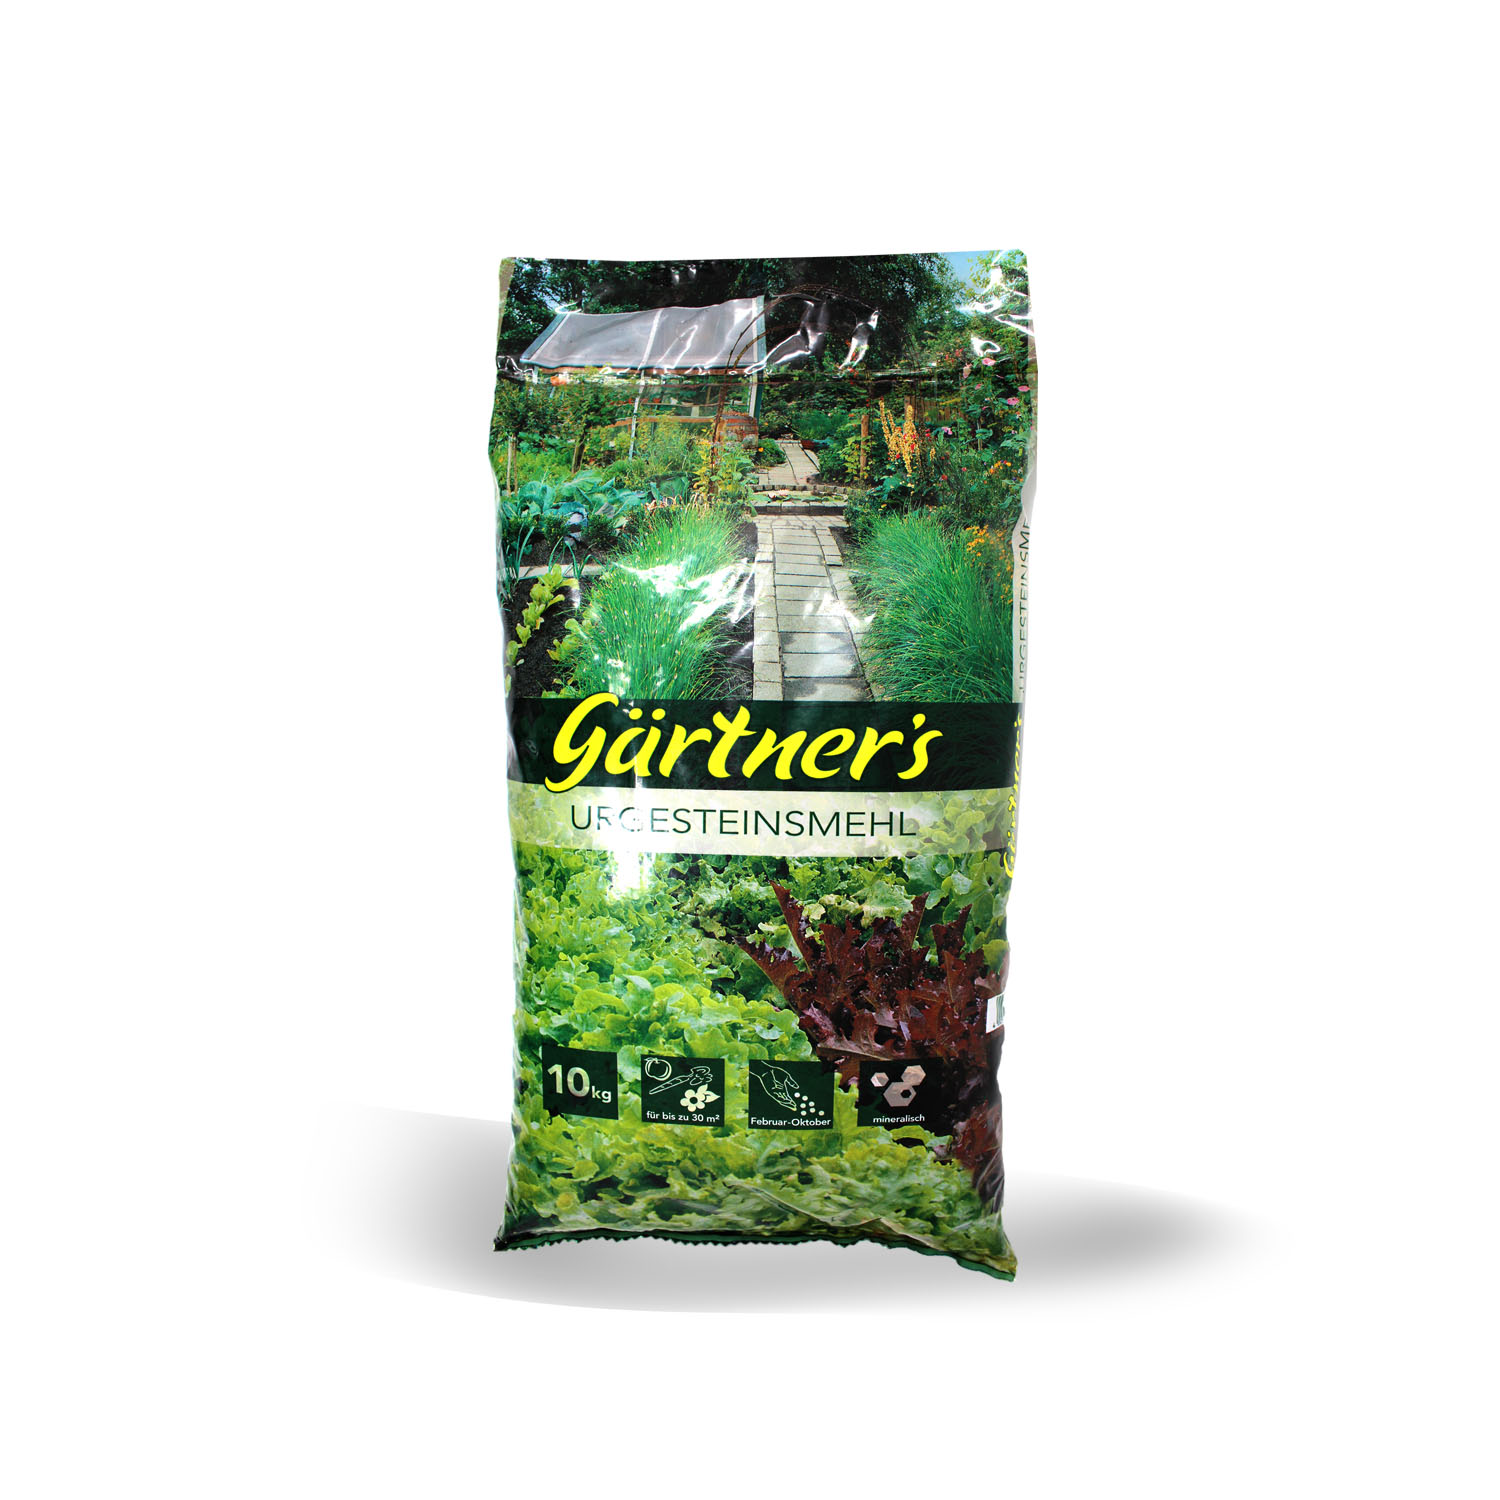 Gärtners Urgesteinsmehl 10 kg | Baumpflege | Garten | Haus & Garten